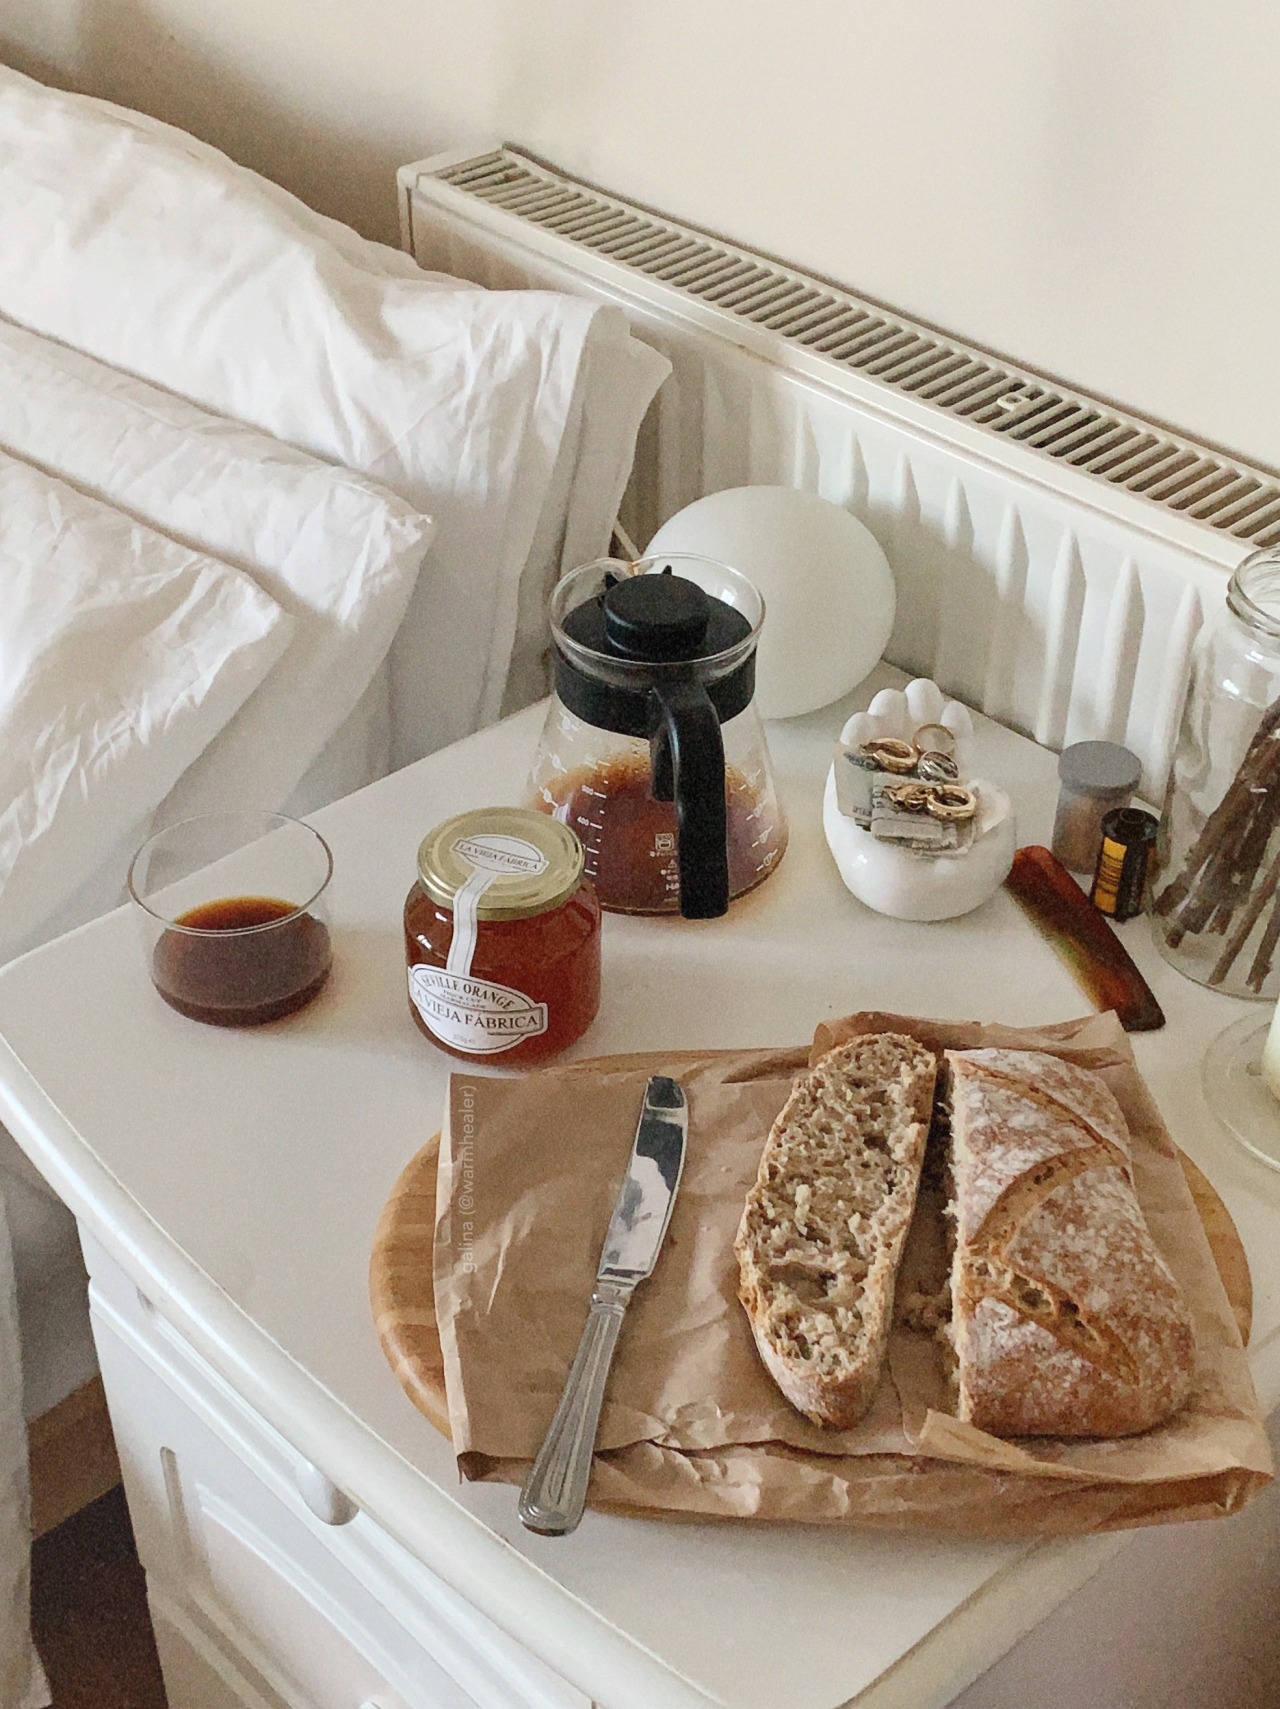 Bed breakfast tumblr in n